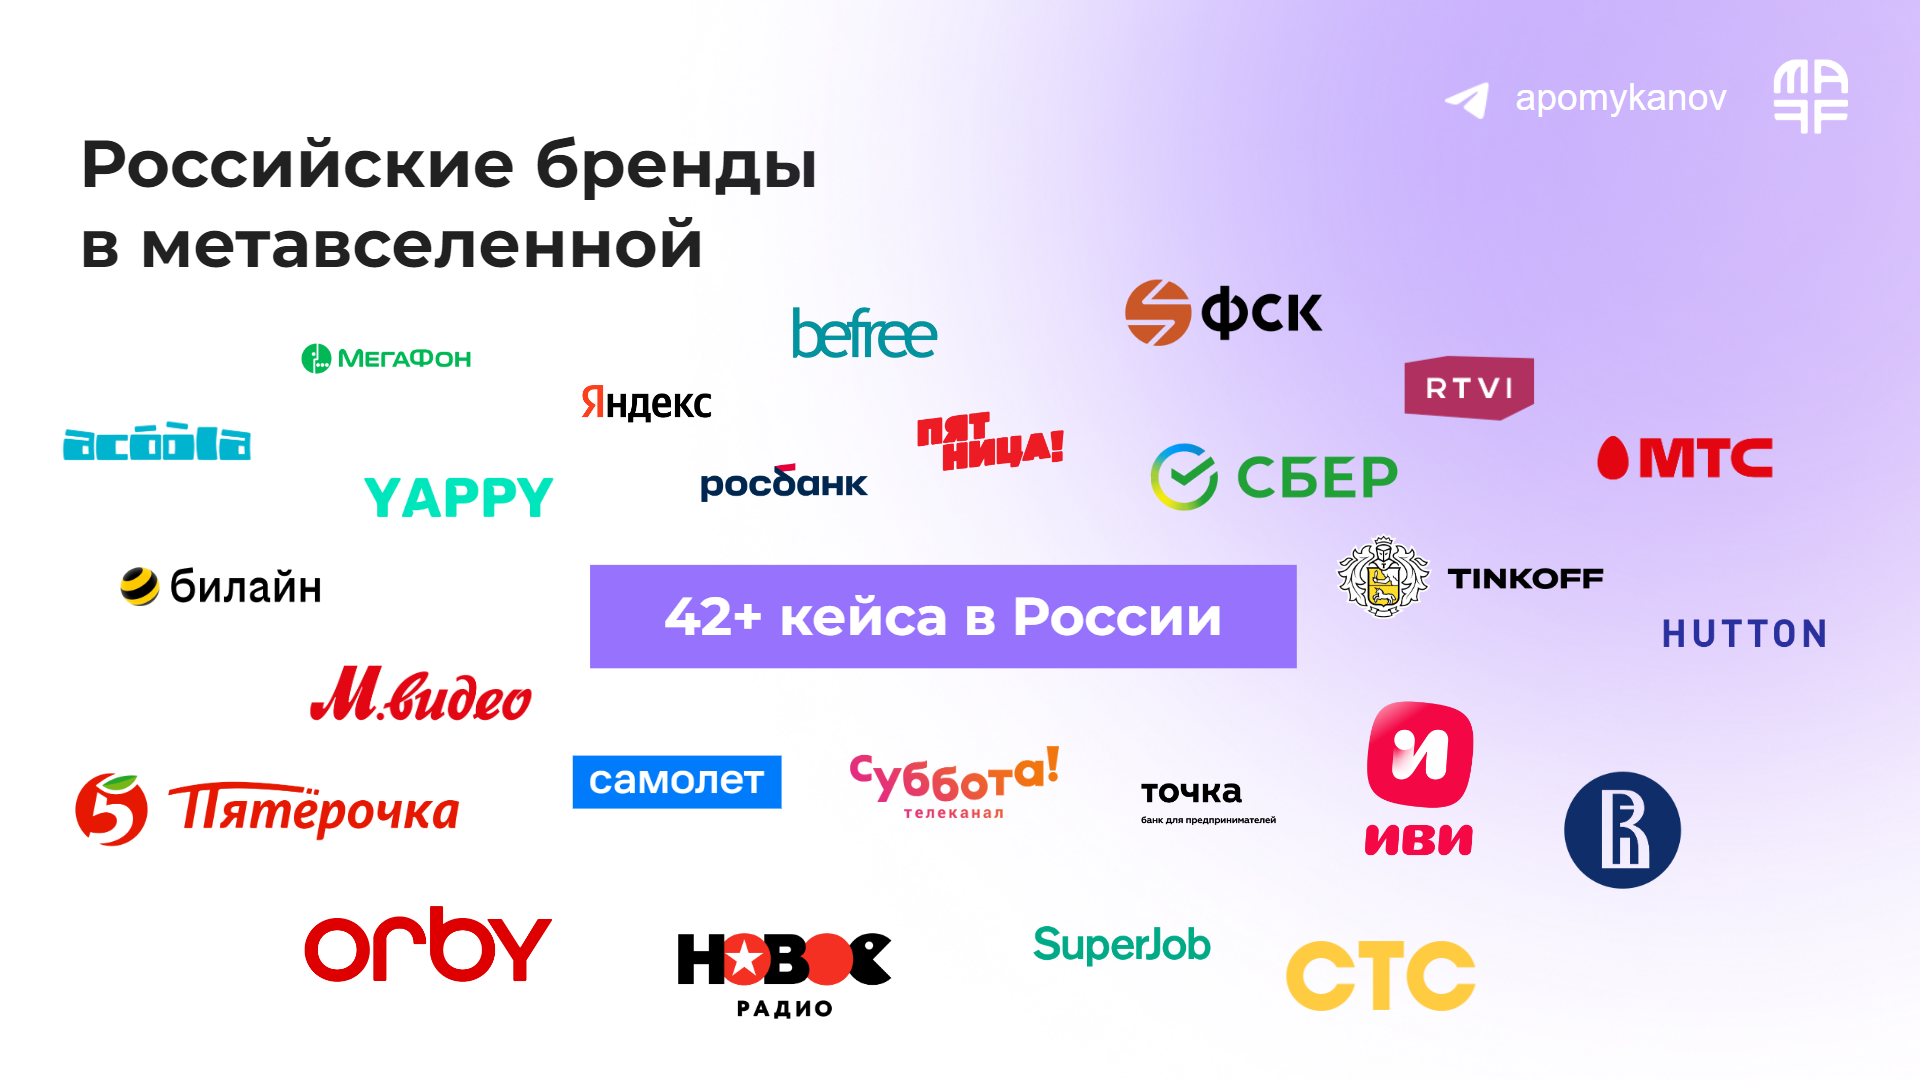 Российские бренды, которые вышли в метавселенные